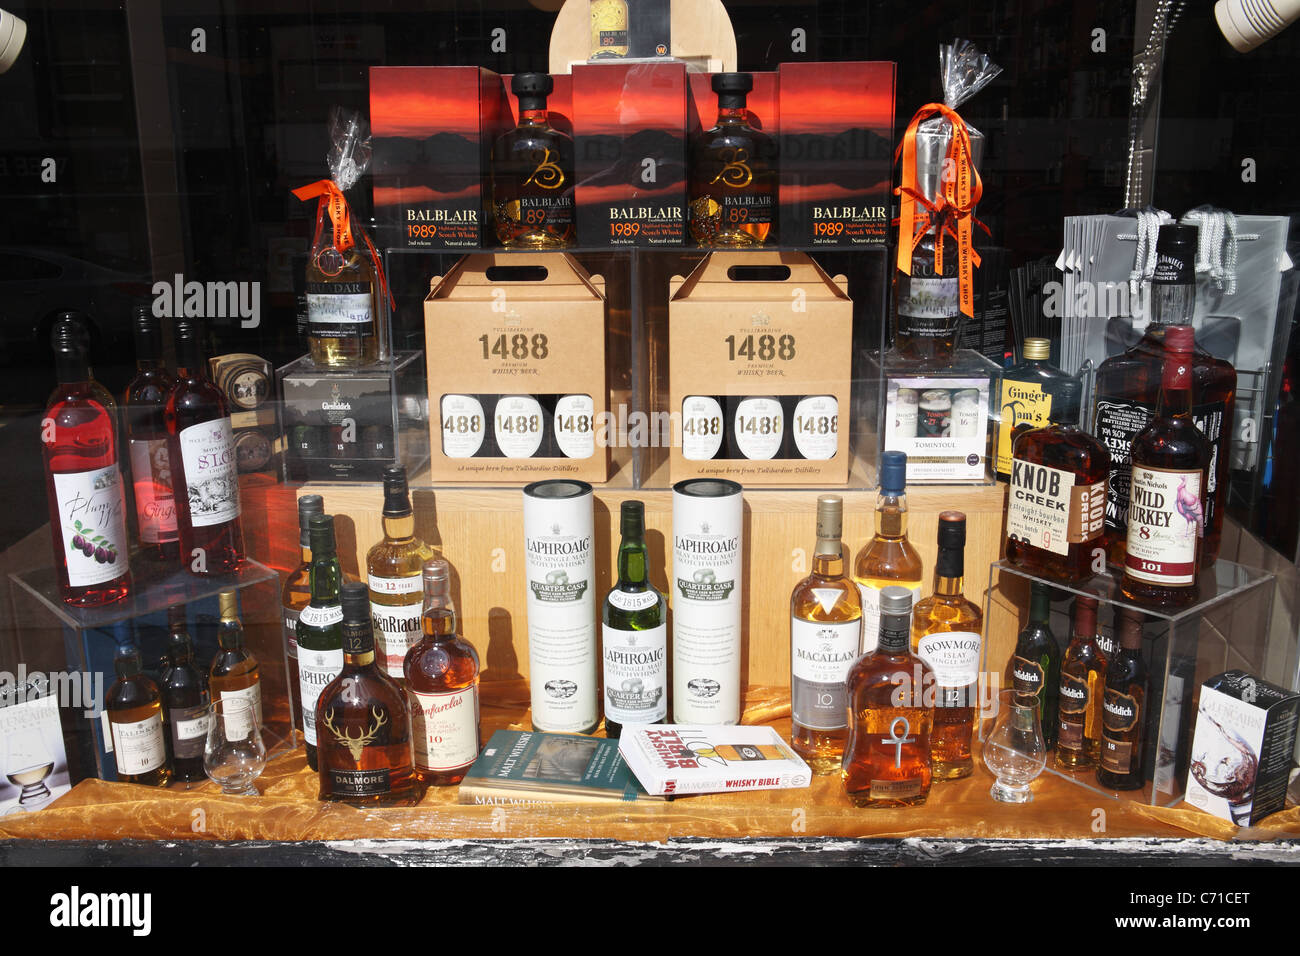 Ein Schaufenster anzeigen von Whisky-Flaschen Callander, Stirling, Schottland. Stockfoto